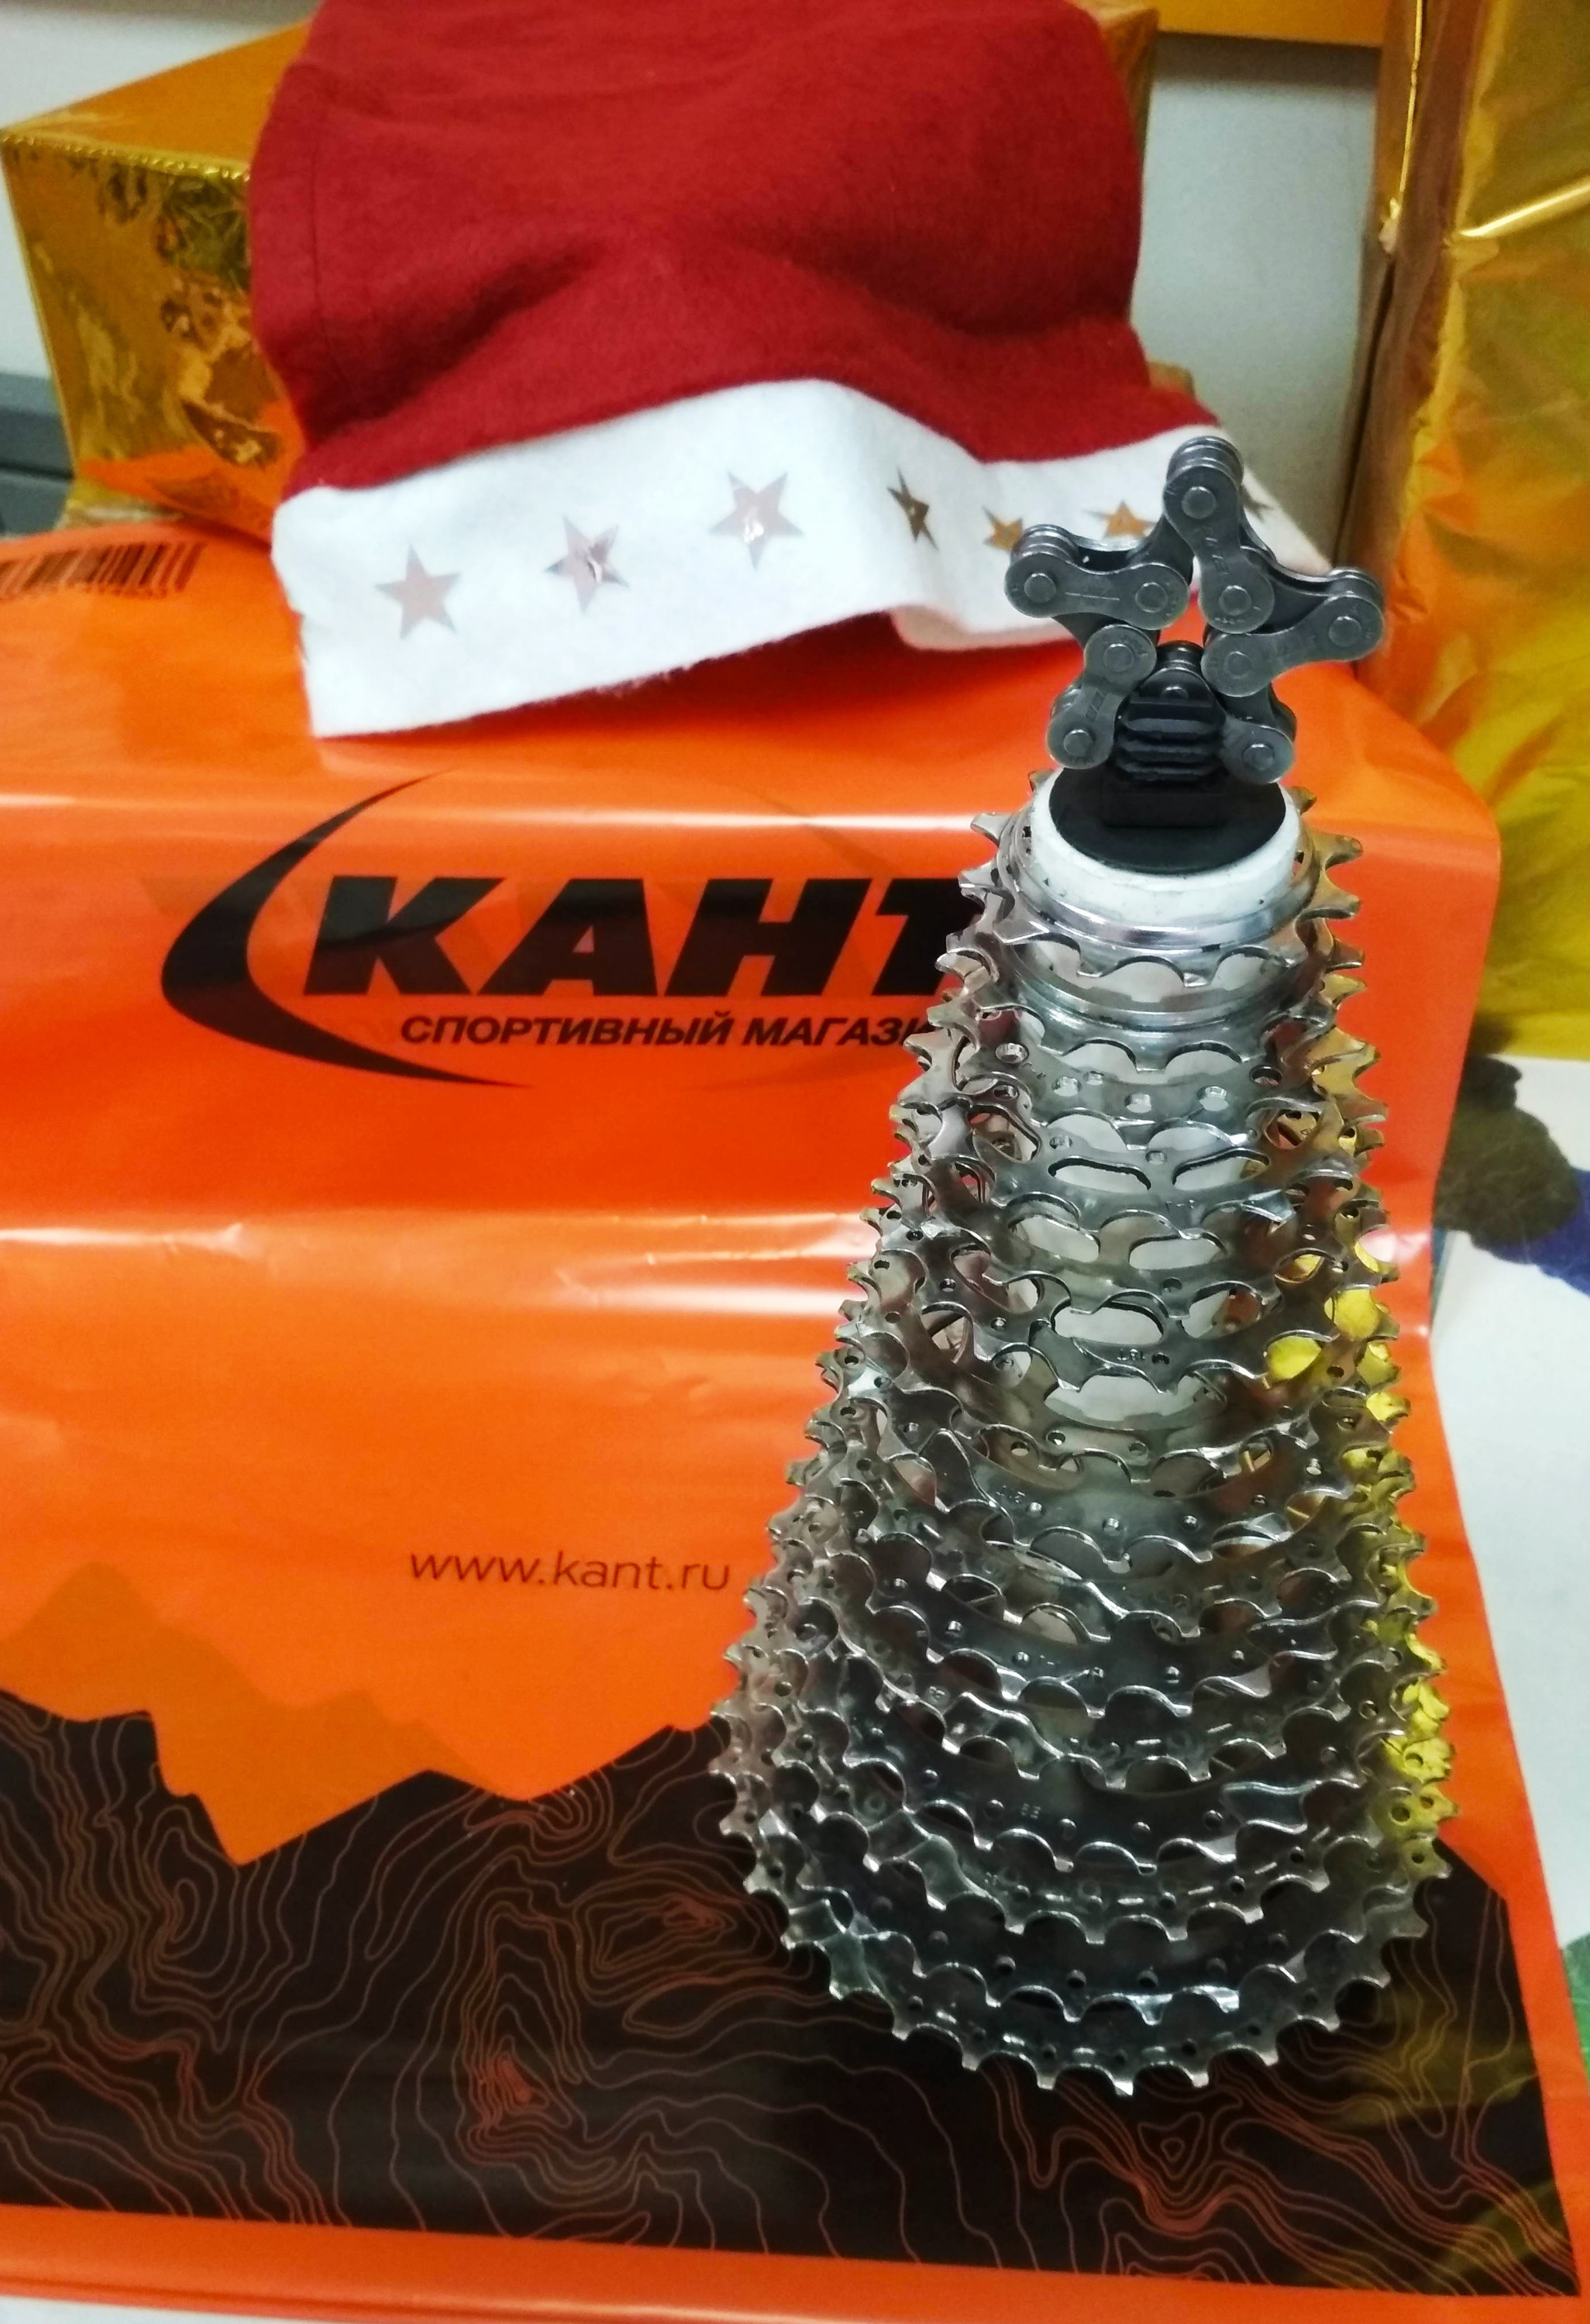 В спортивном магазине «Кант» ёлку сделали из звезд трансмиссии горного велосипеда и звезды из цепочки велосипеда